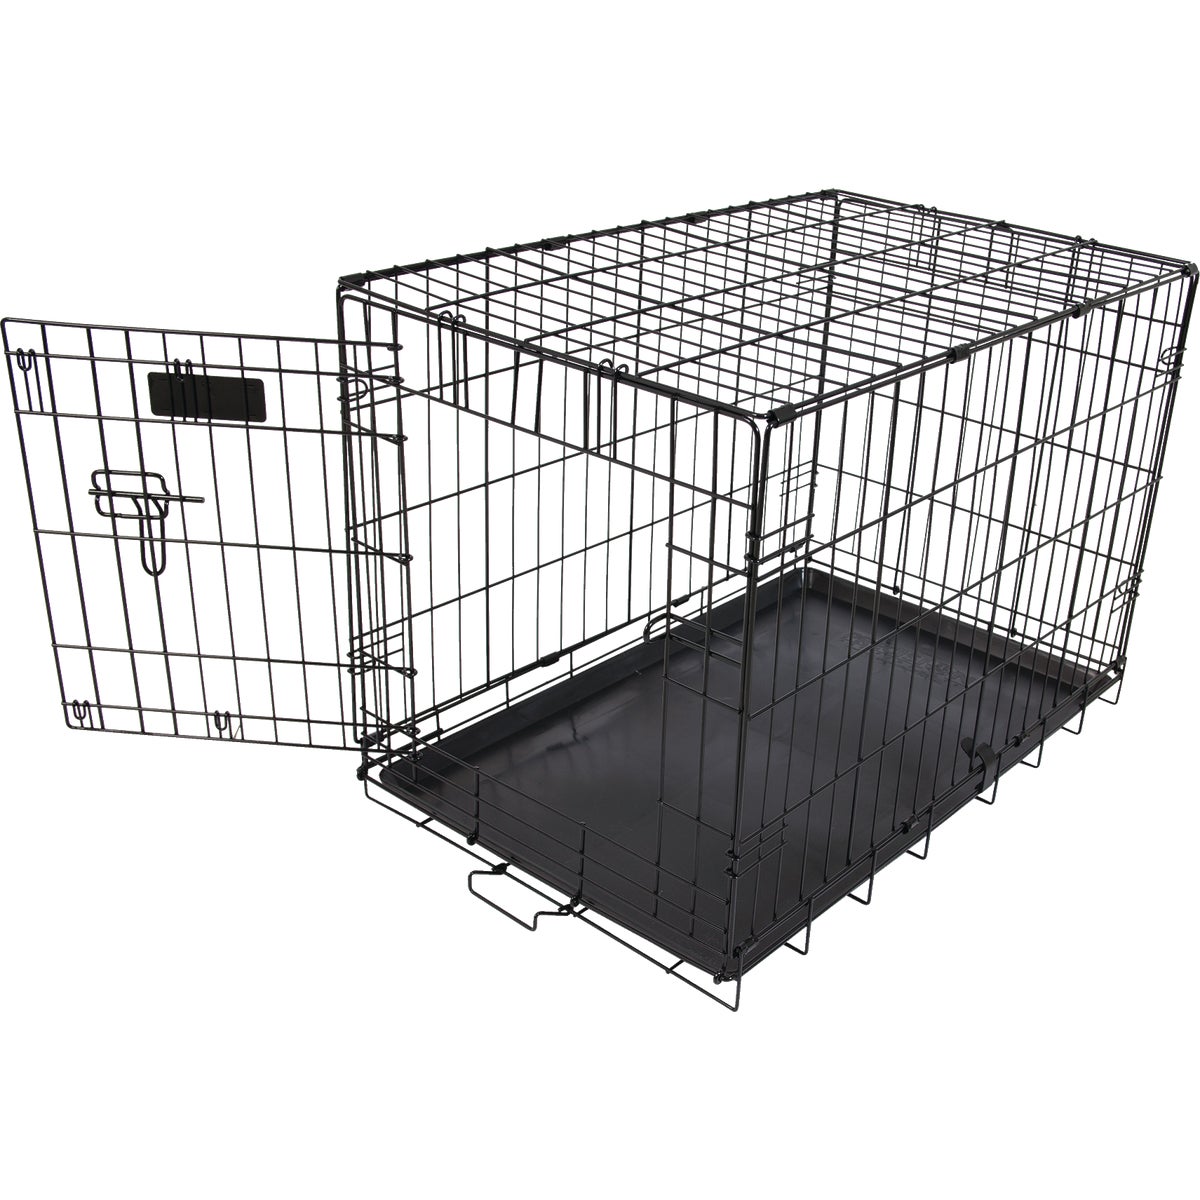 Item 814774, 1-door wire indoor training dog crate.